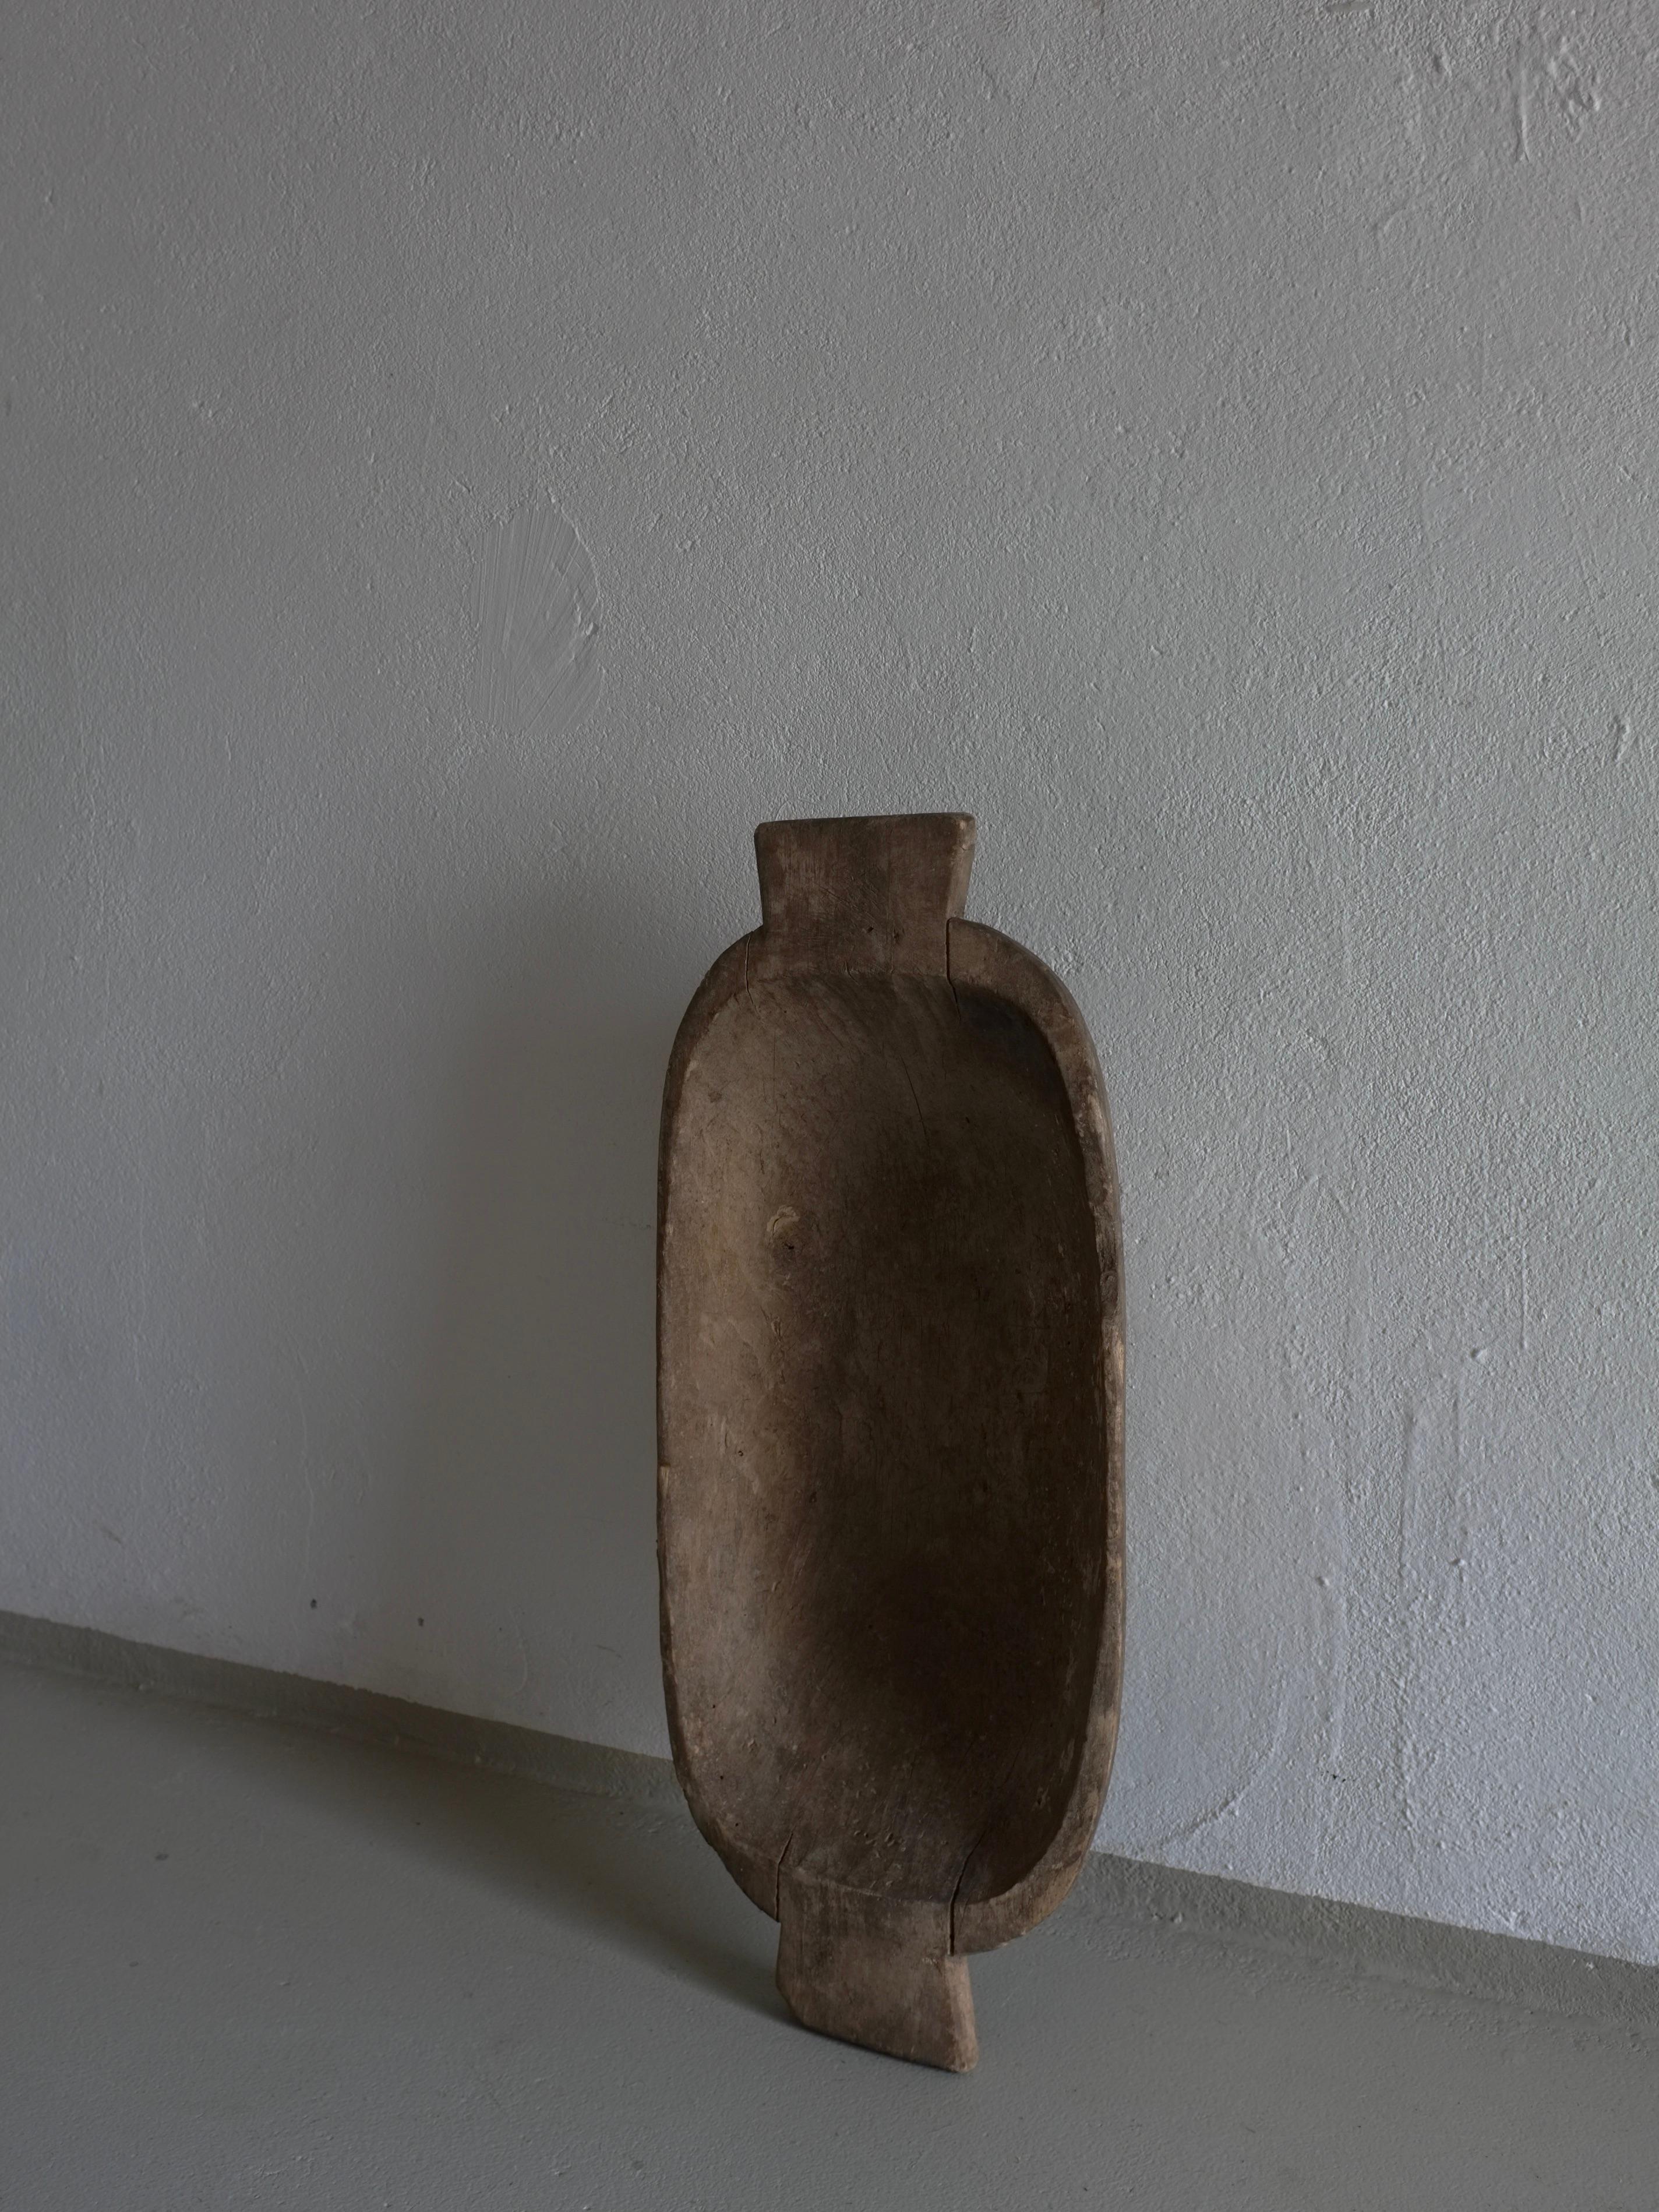 Ancien bol primitif en bois sculpté (#1) avec une belle patine.

Informations complémentaires :
Origine : Lettonie
Dimensions : L 65 cm x P 28 cm x H 10,5 cm 